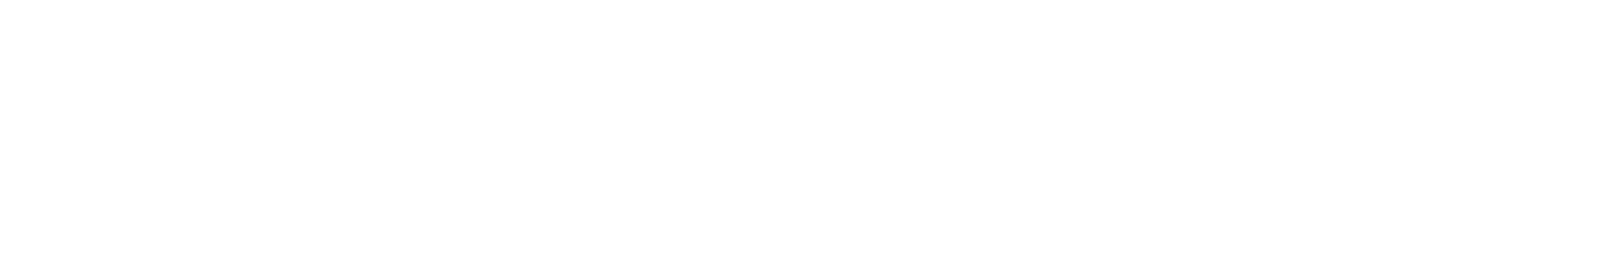 Poshmark Logo groß für dunkle Hintergründe (transparentes PNG)